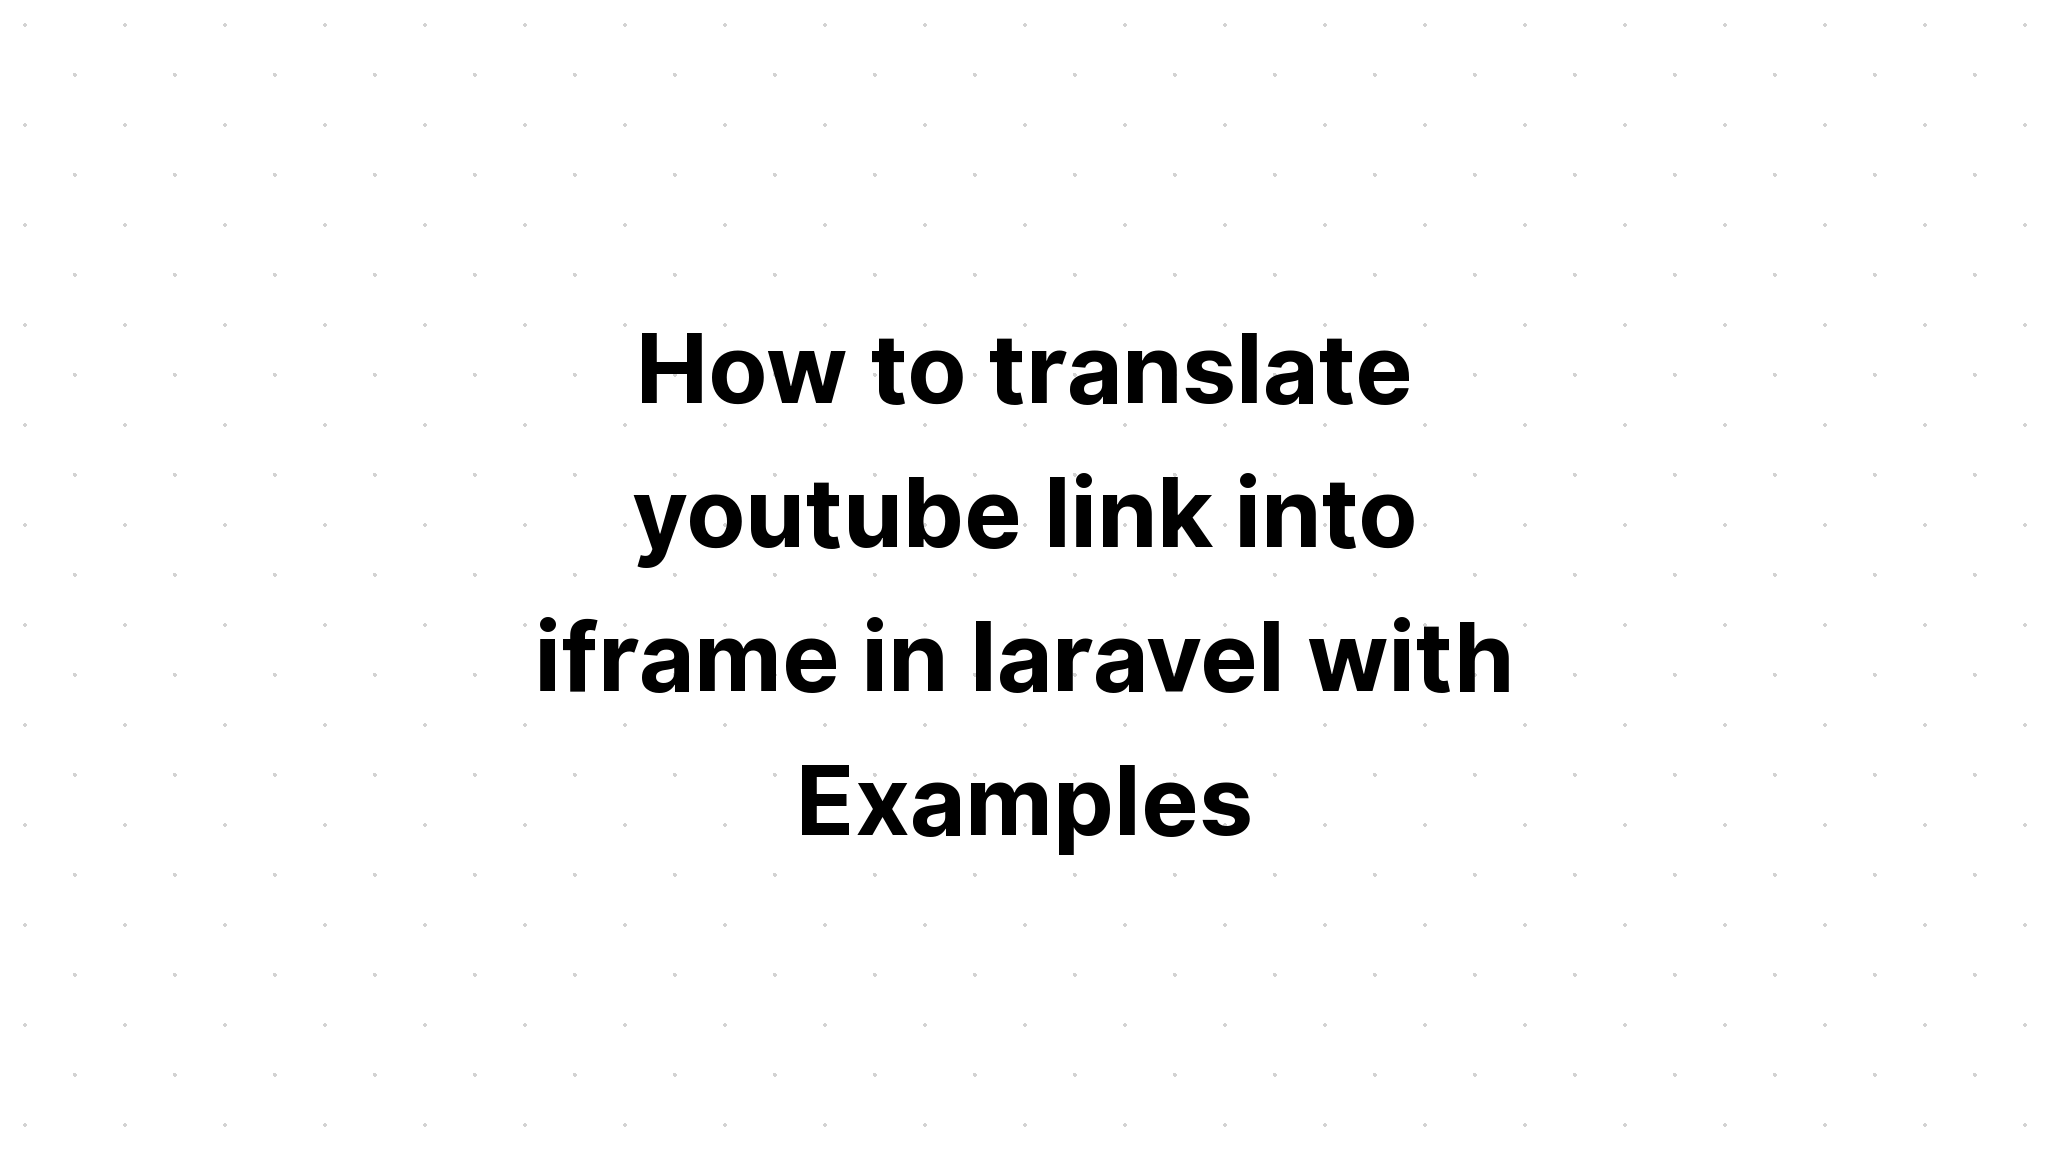 Cách dịch liên kết youtube thành iframe trong laravel với các ví dụ